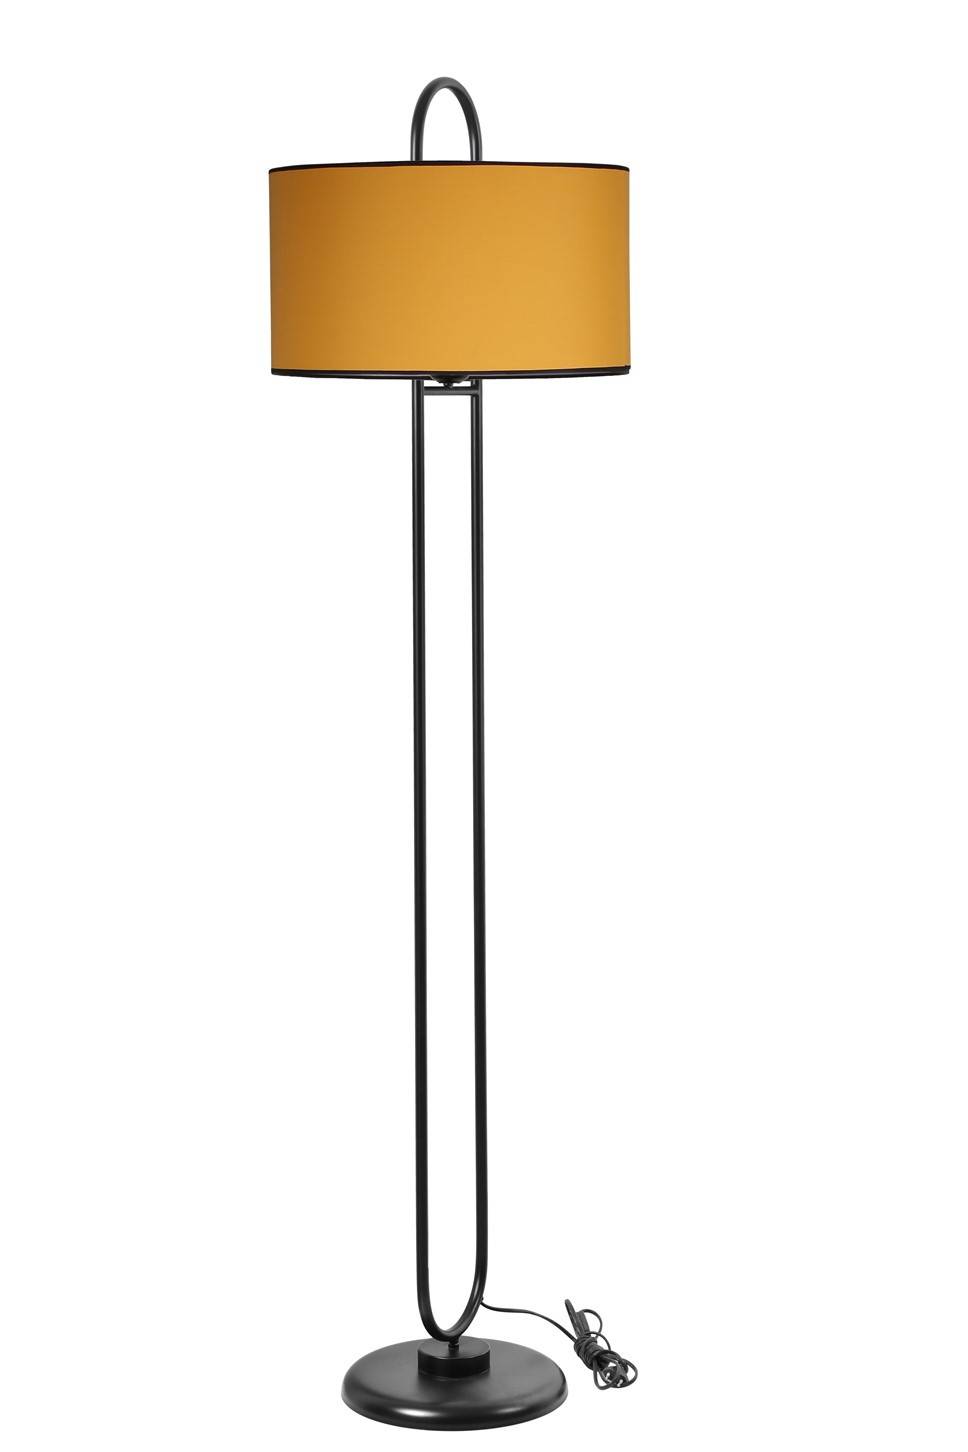 Ovalis elliptische vloerlamp 170cm Gele stof en zwart metaal